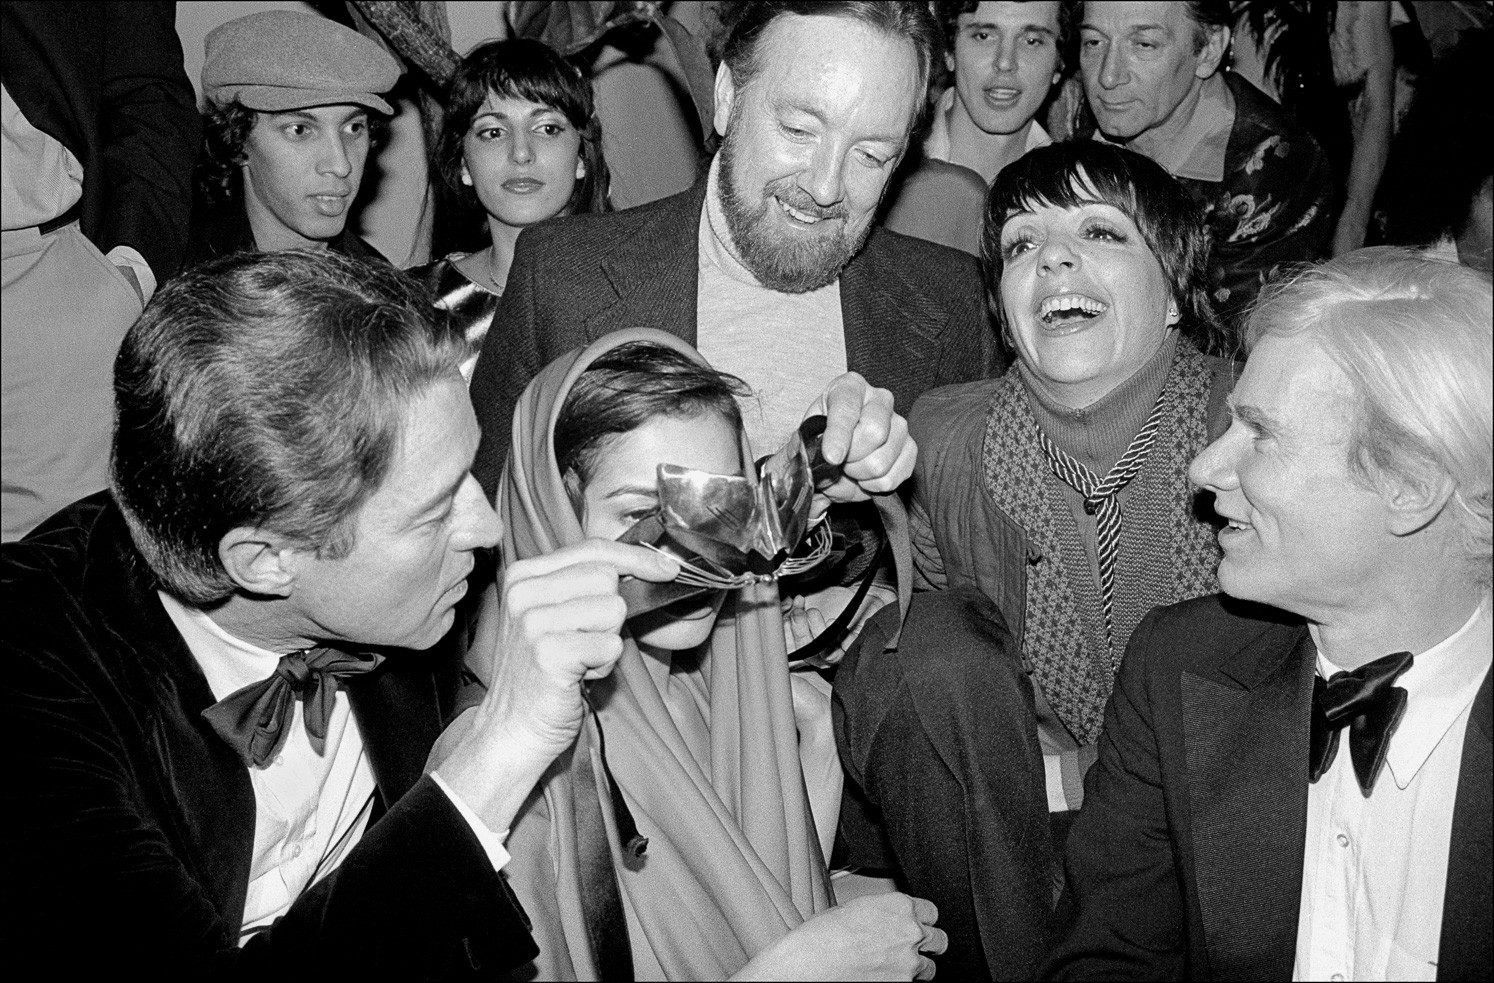 Джек Хейли-младший, Лайза Миннелли и Энди Уорхол смеются, когда Холстон надевает маску на глаза Бьянки Джаггер на новогодней вечеринке Студия 54. Фотограф Аллан Танненбаум